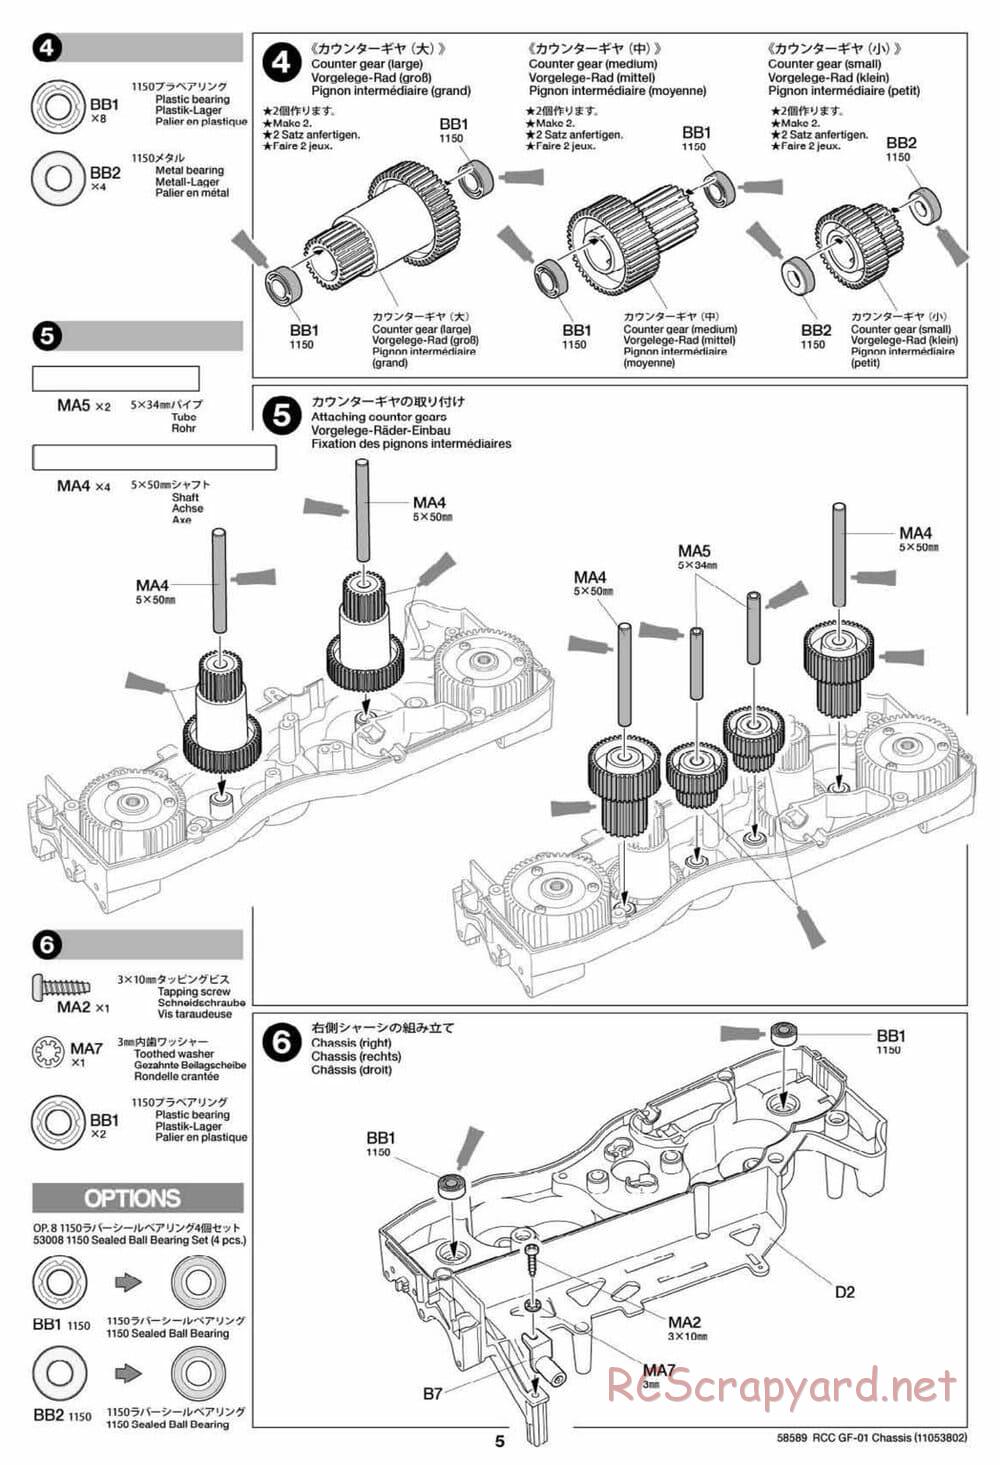 Tamiya - GF-01 Chassis - Manual - Page 5